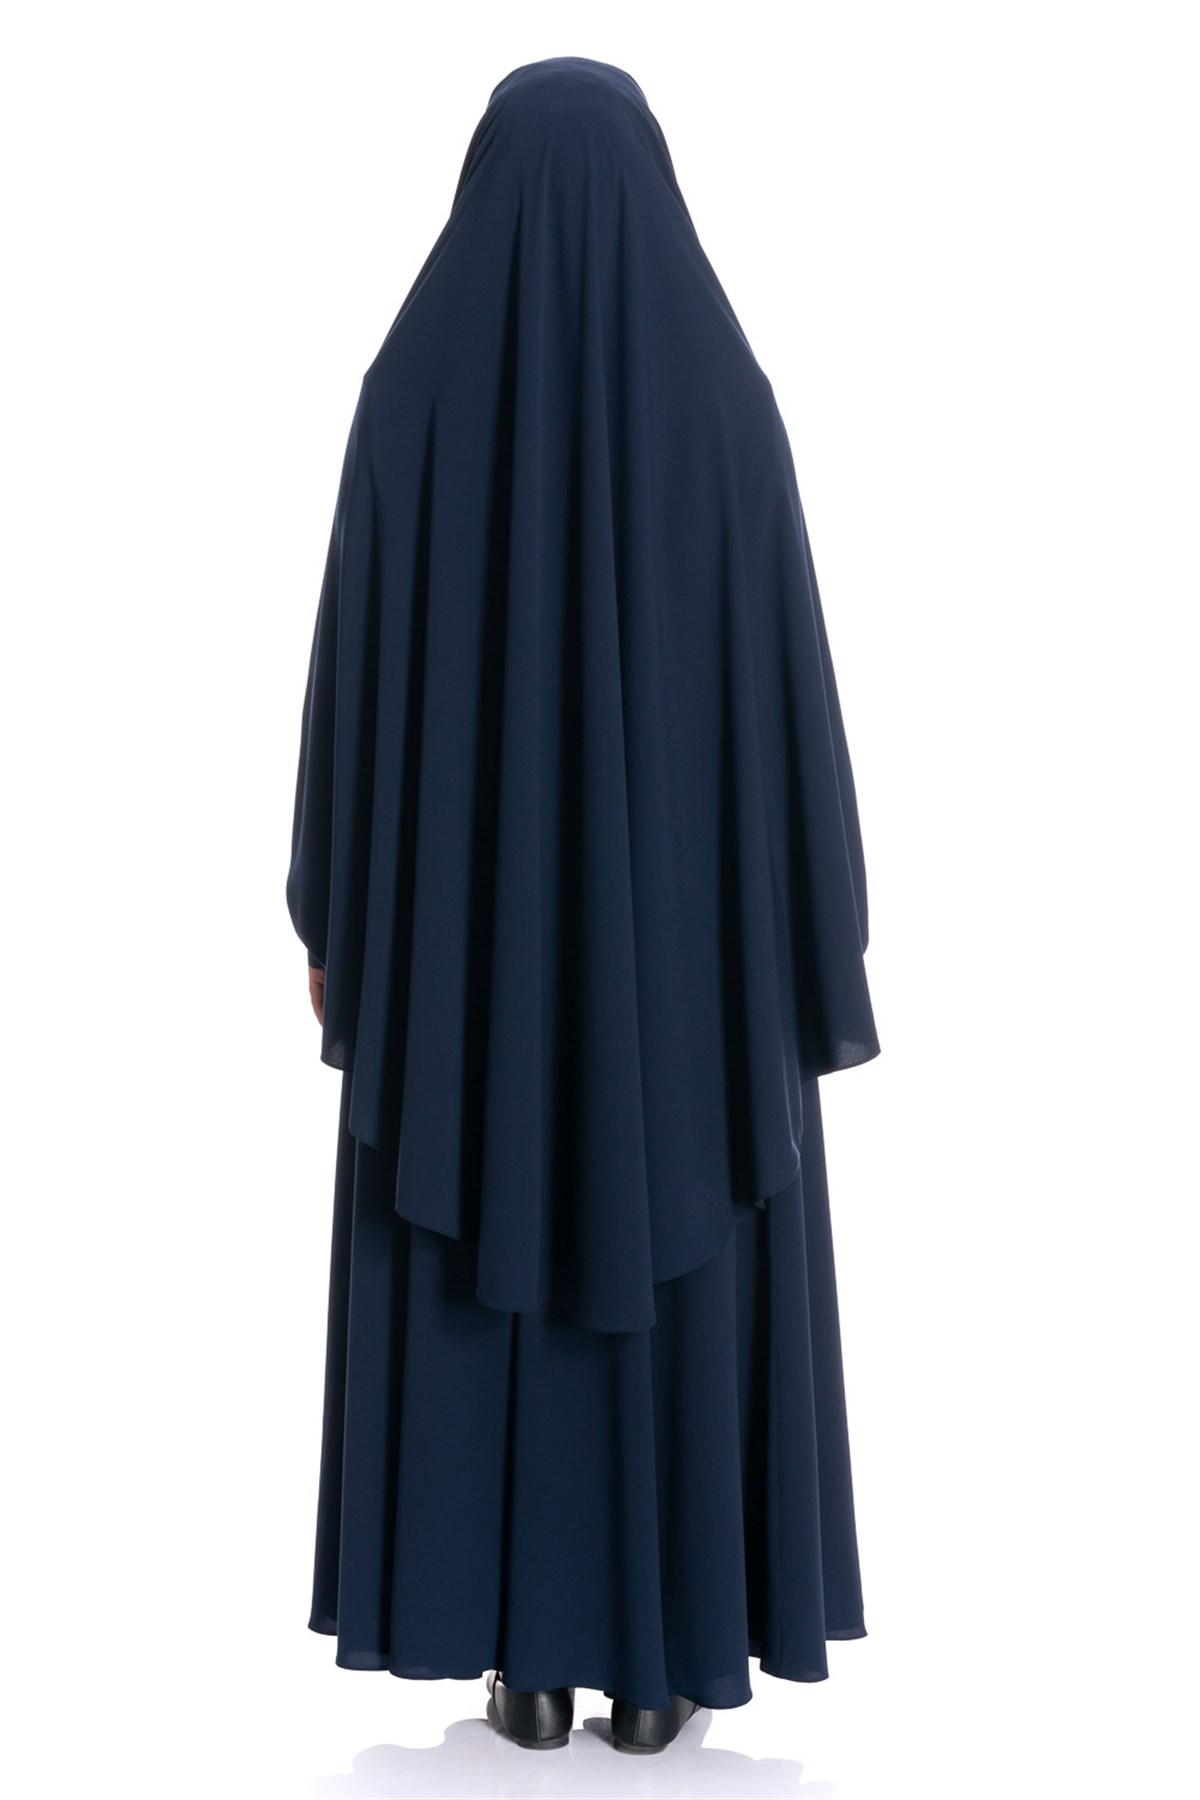 Sultanbaş Krep Peçeli Ayrı Çarşaf Lacivert Modeli ve Fiyatı